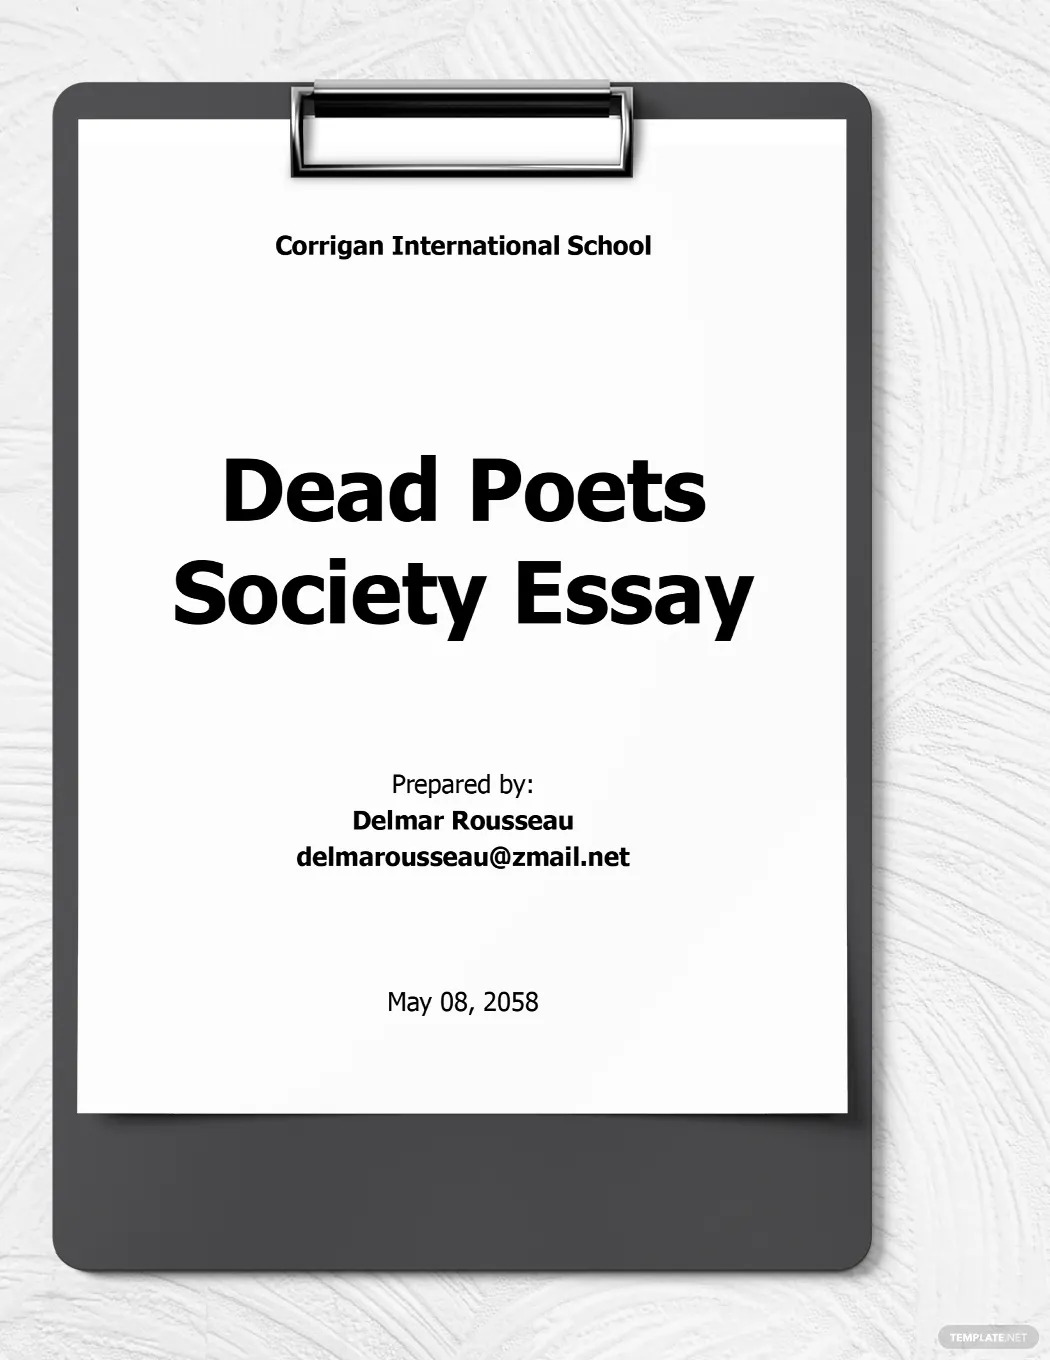 society-essay-ideas-and-examples